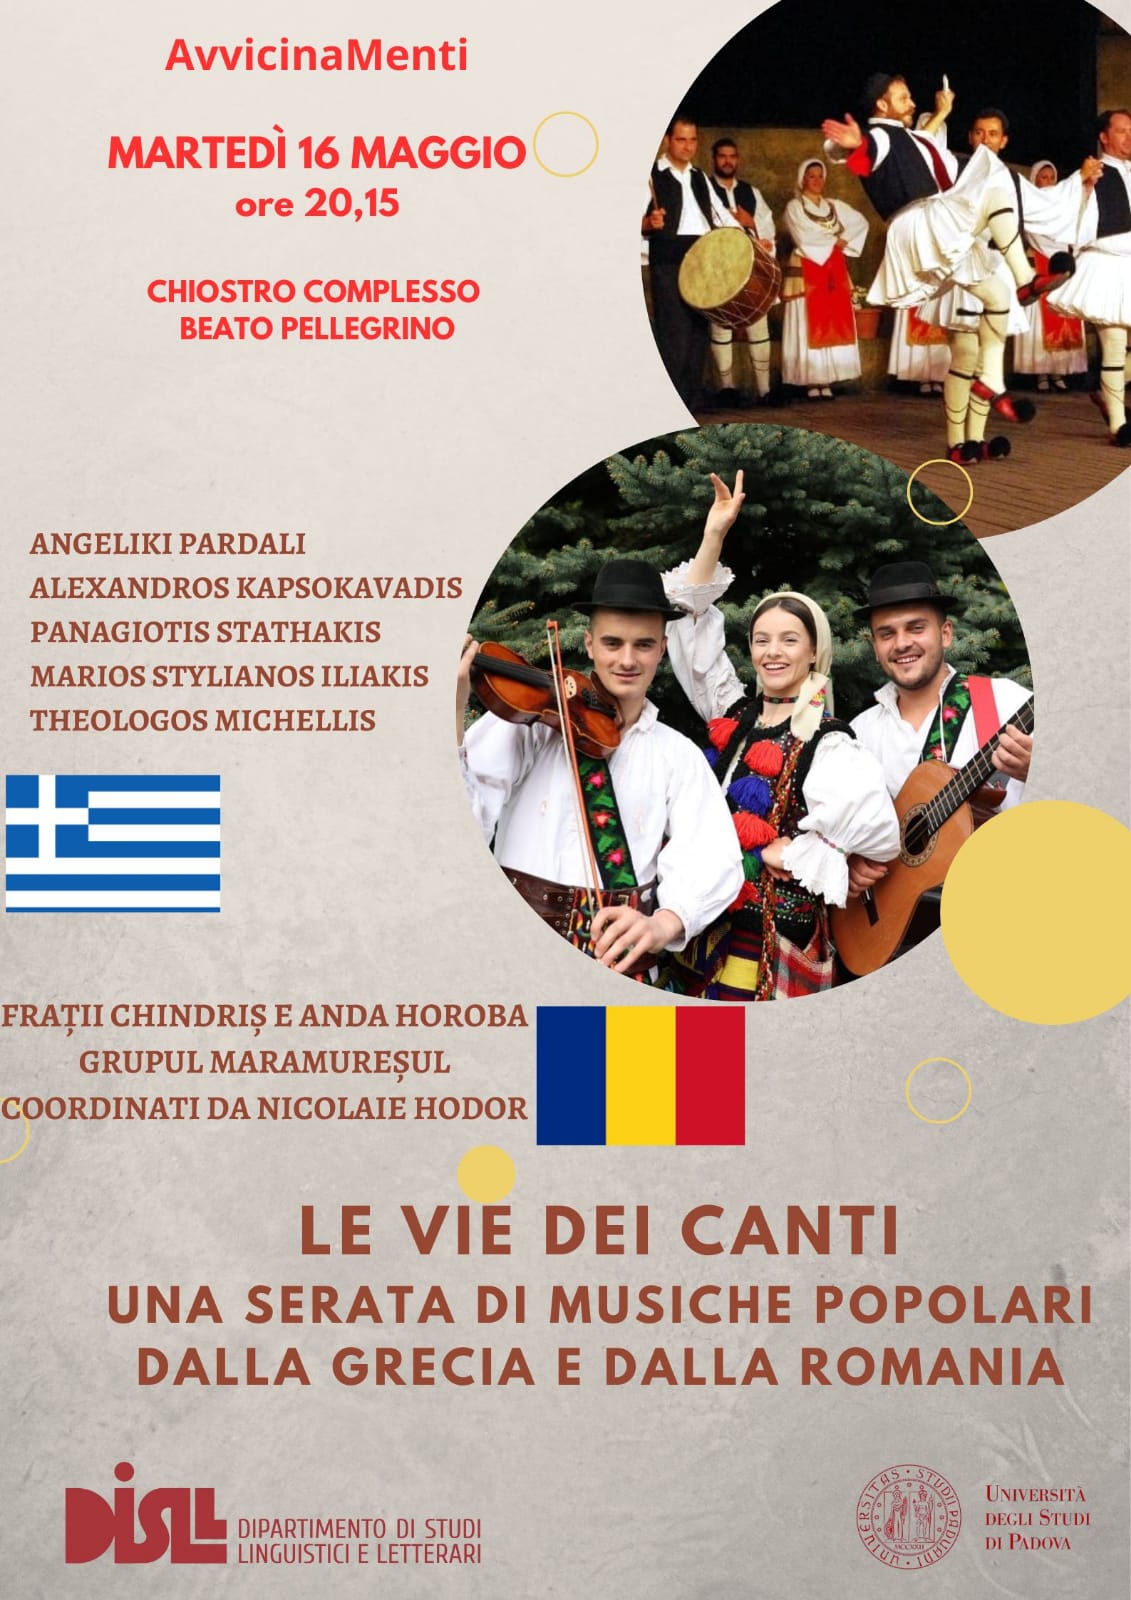 Attachment post-672493-Locandina musica greca e romena.jpeg